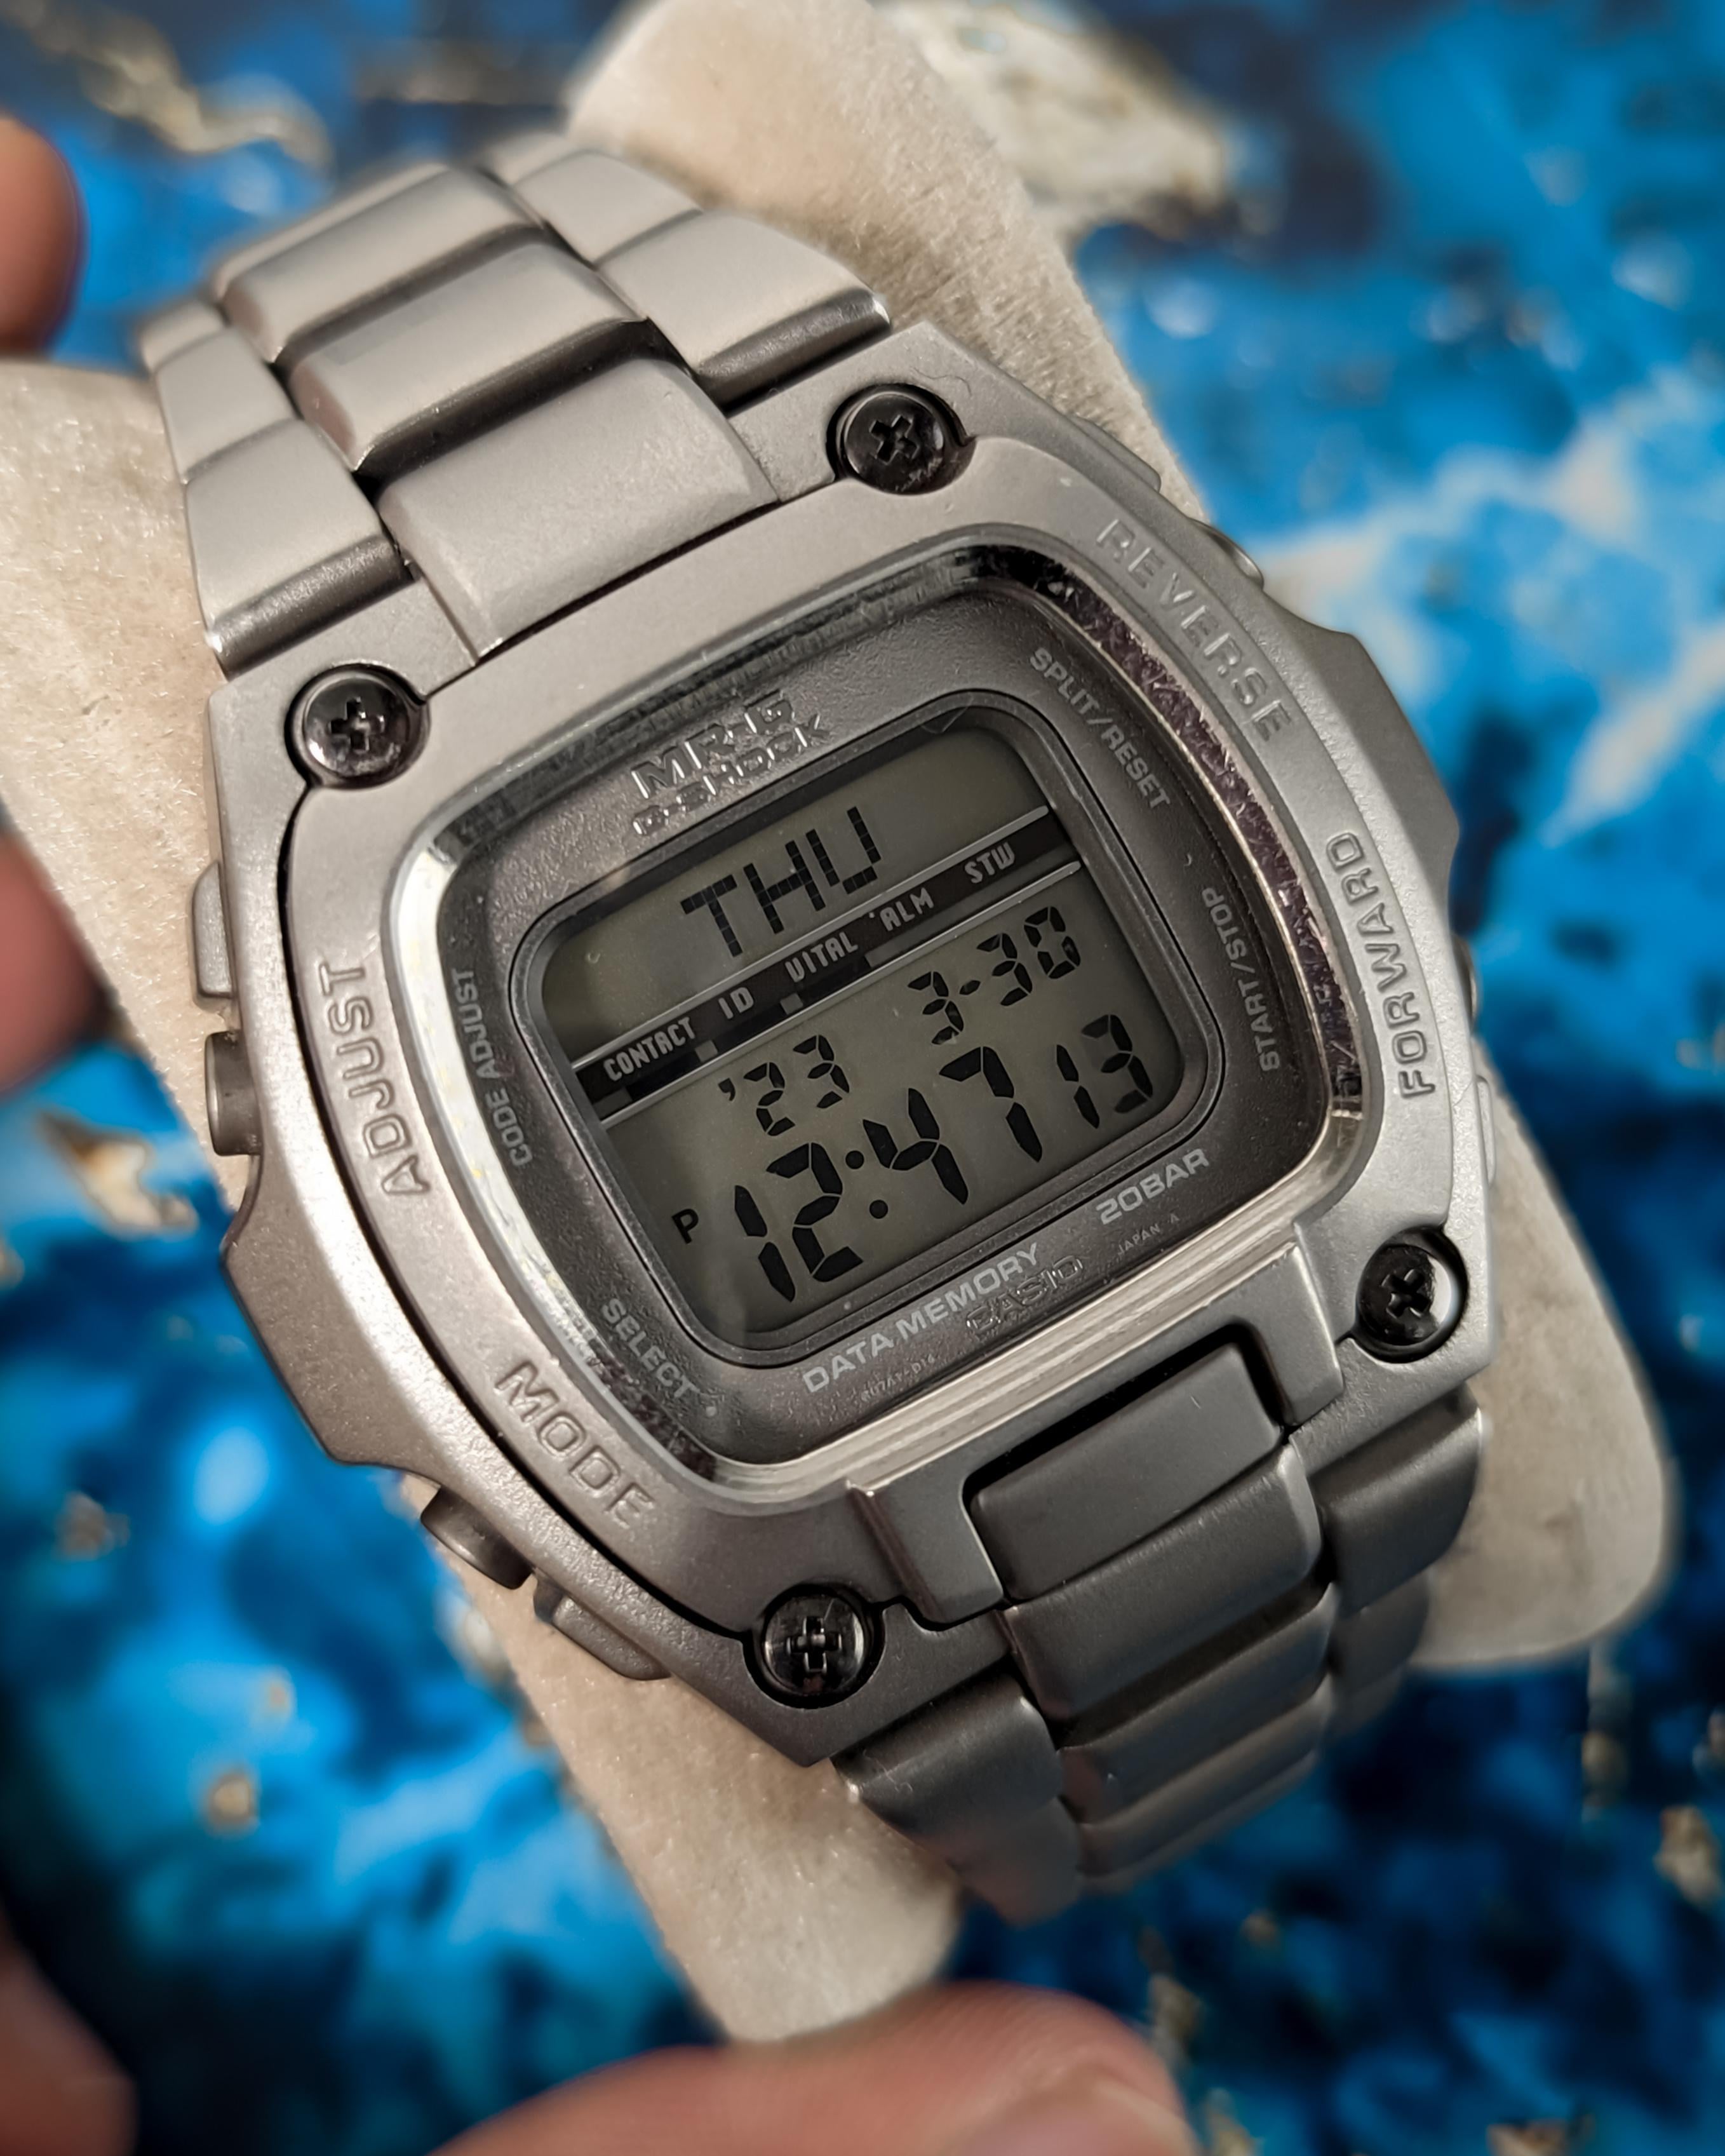 Gショック MRG-210T - 腕時計(デジタル)